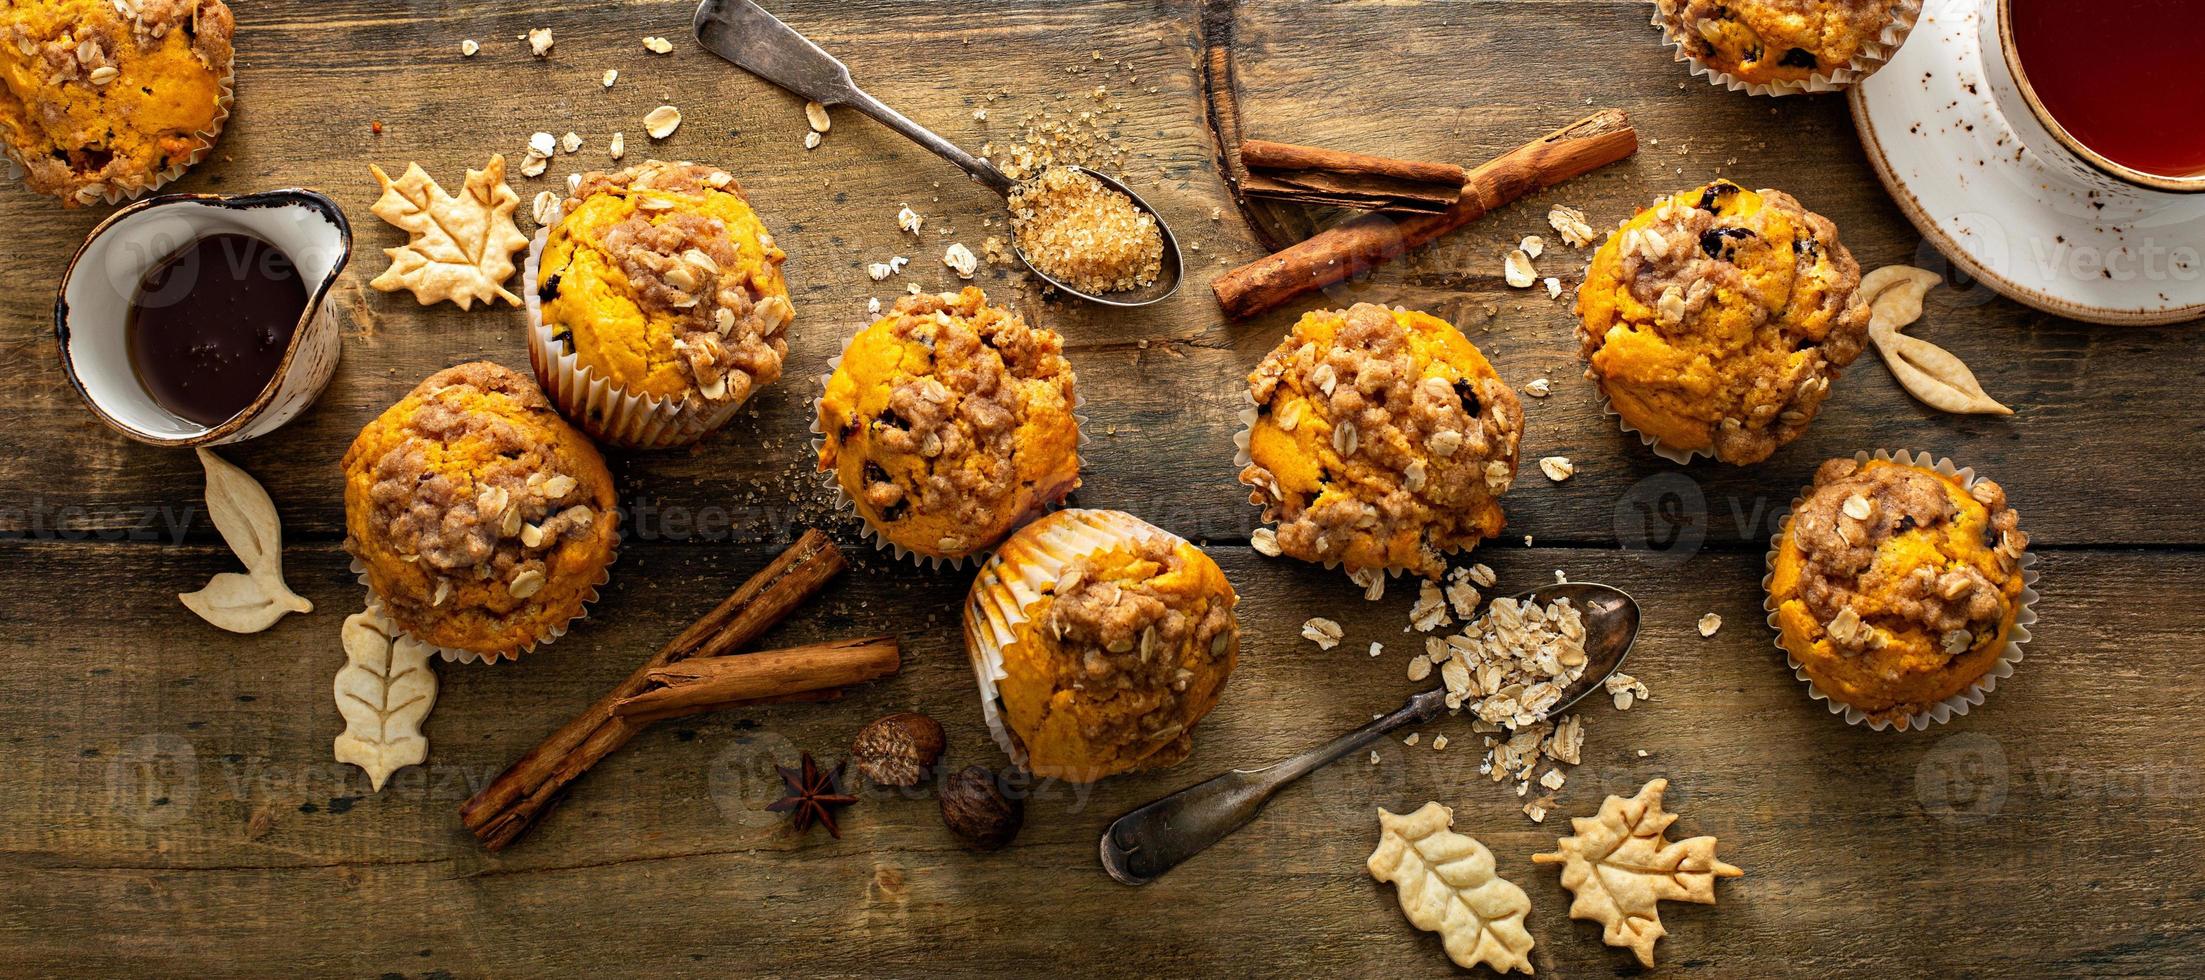 muffins de abóbora com crumble de aveia e açúcar mascavado foto